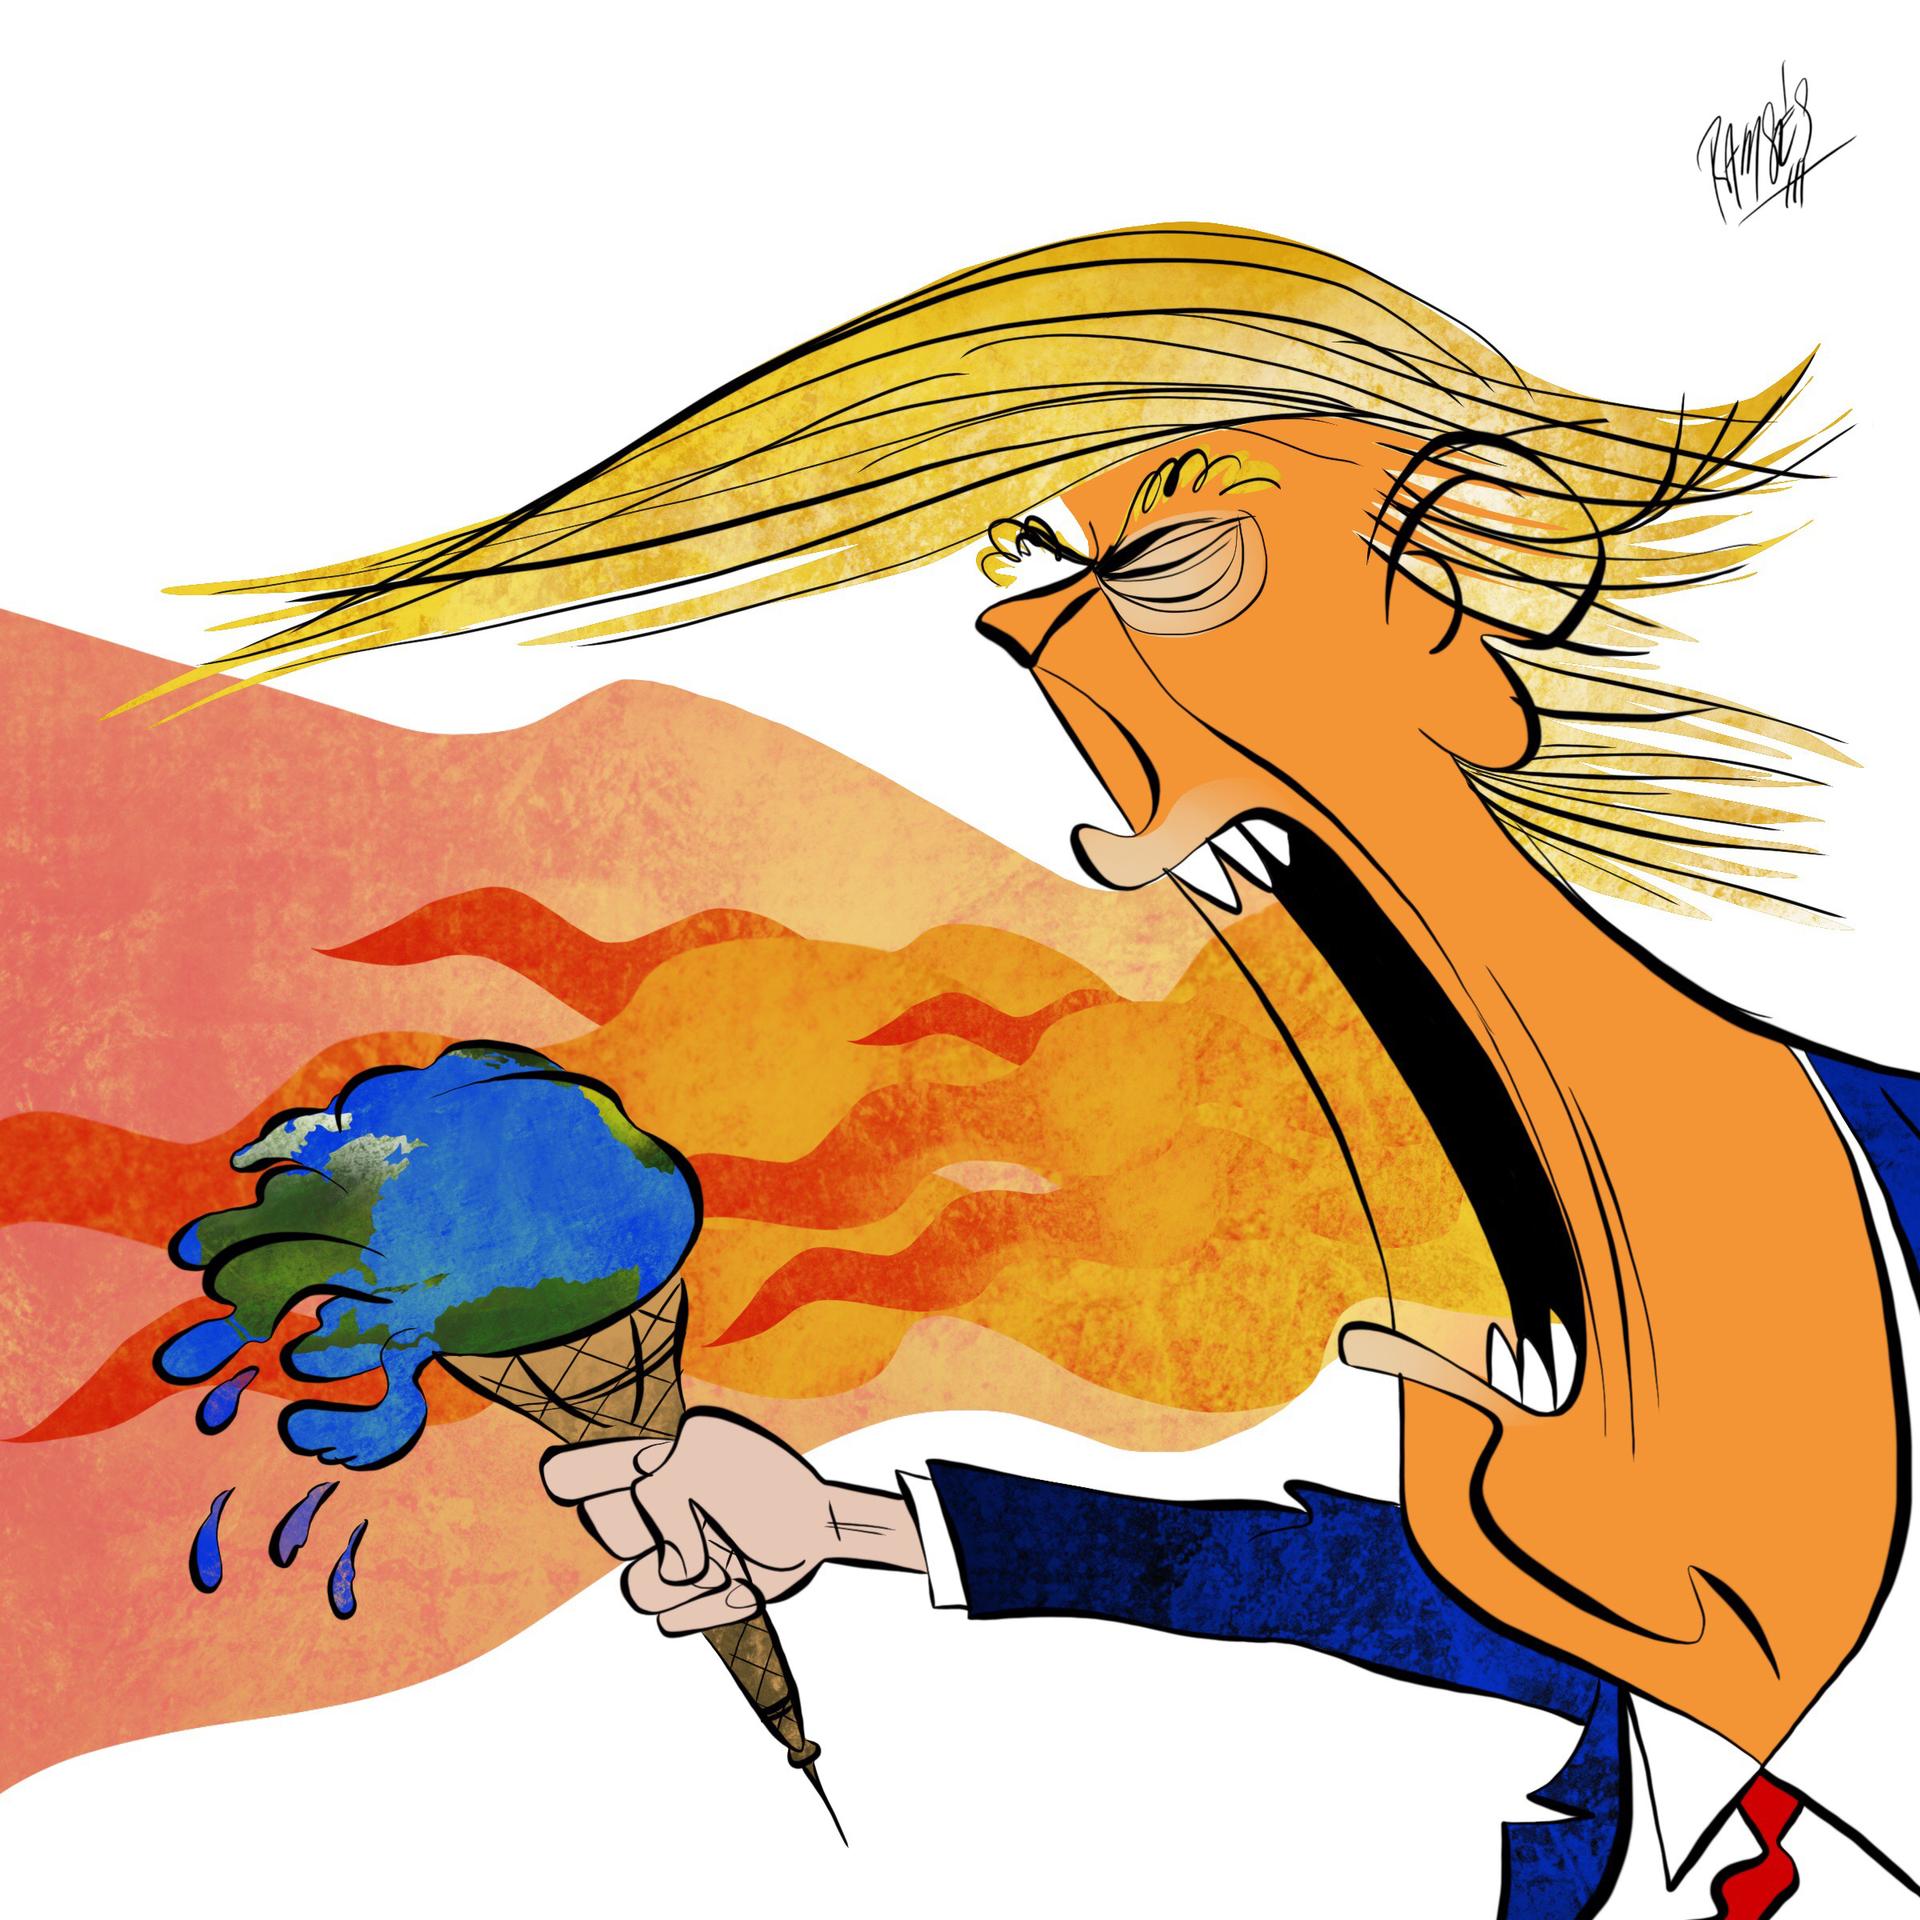 Trump's dragon breath melts the earth ice cream cone